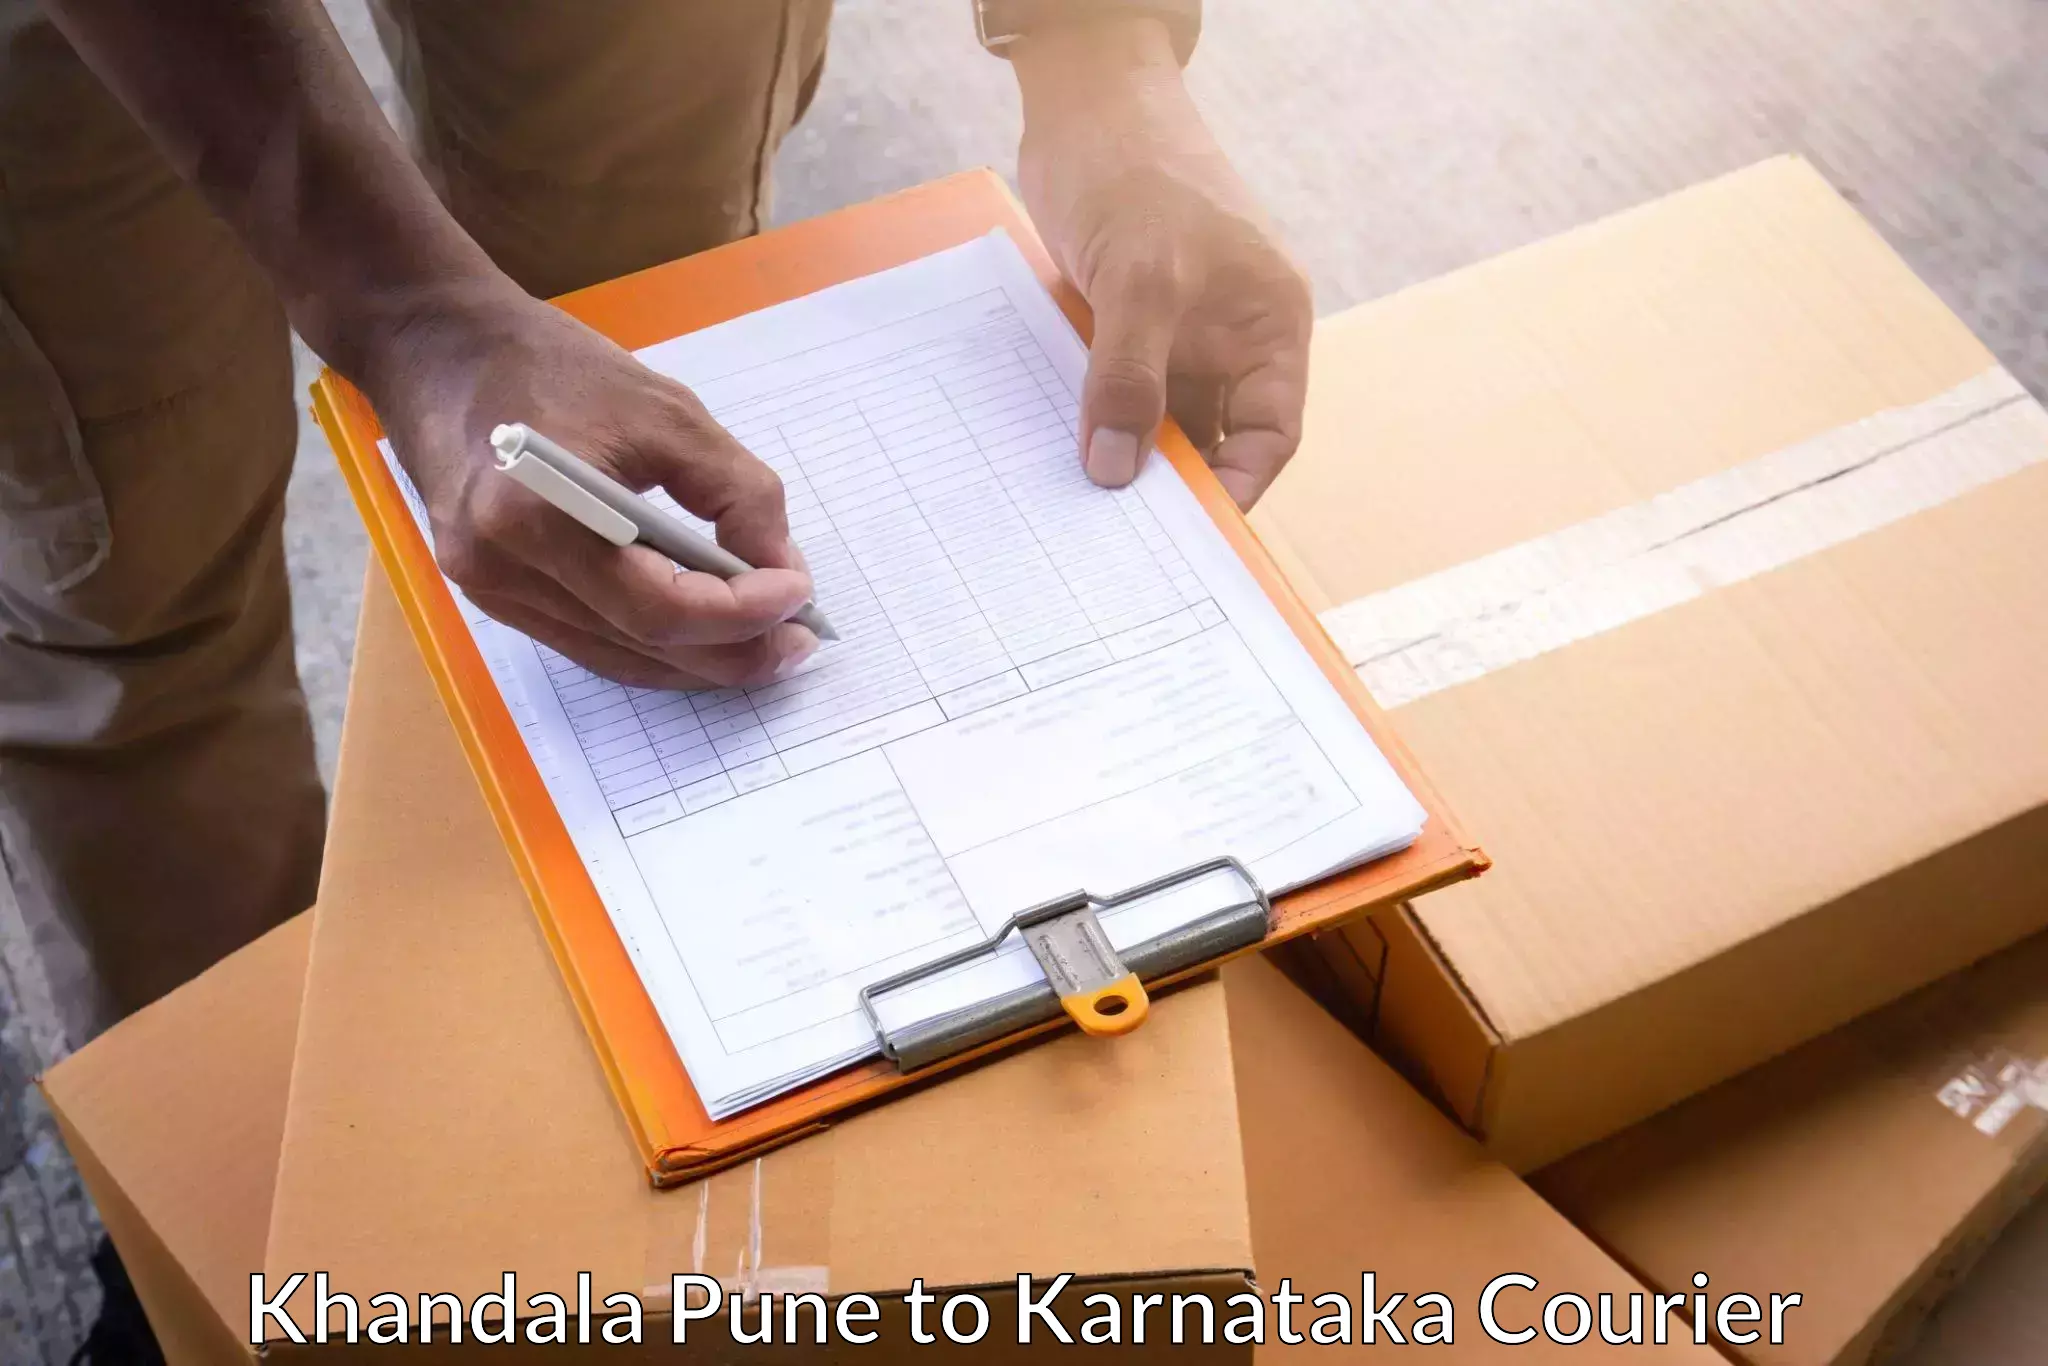 Lightweight courier Khandala Pune to Tarikere